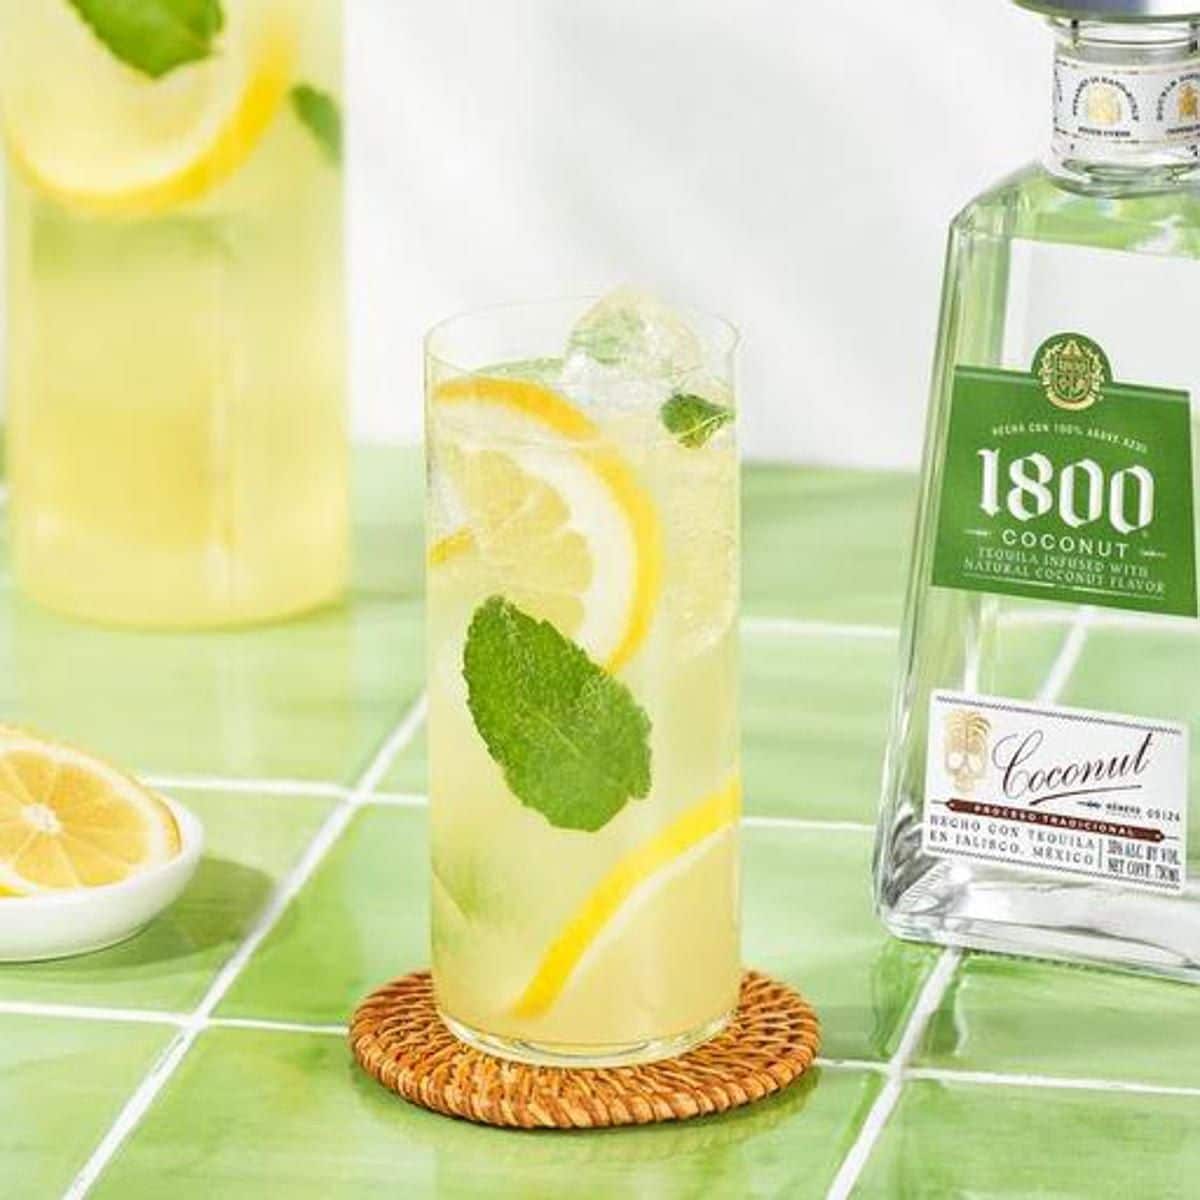 1800 Coconut Ginger Mint Lemonade